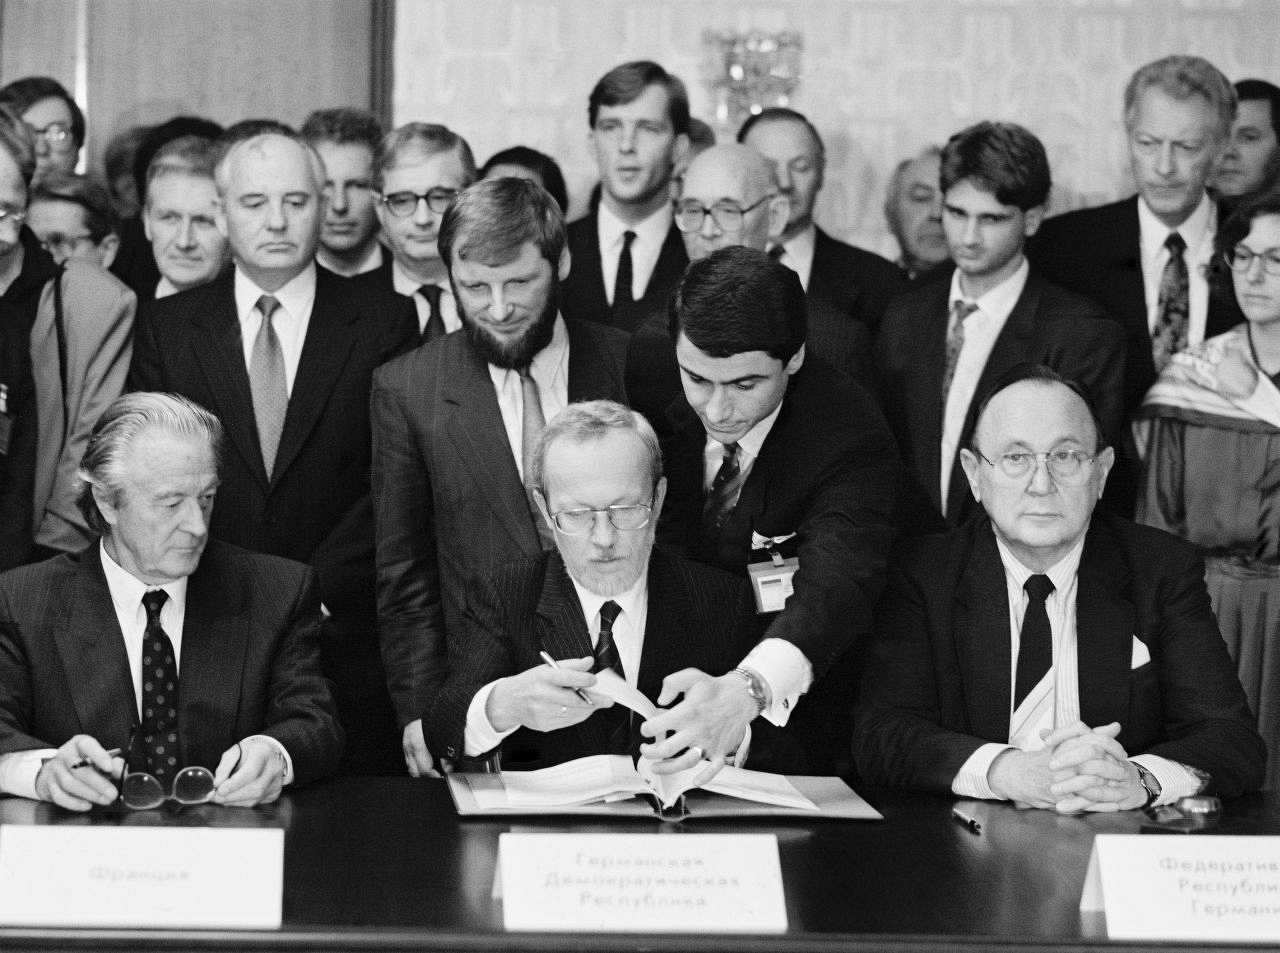 schwarzweiße Fotografie; Unterzeichnung des Zwei-Plus-Vier-Vertrages in Moskau im Hotel Oktjabrskaja.
von links nach rechts: Roland Dumas (Frankreich), dahinter stehend Michail Gorbatschow (UdSSR), Lothar de Maizière (DDR), Hans-Dietrich Genscher (Bundesrepublik Deutschland).